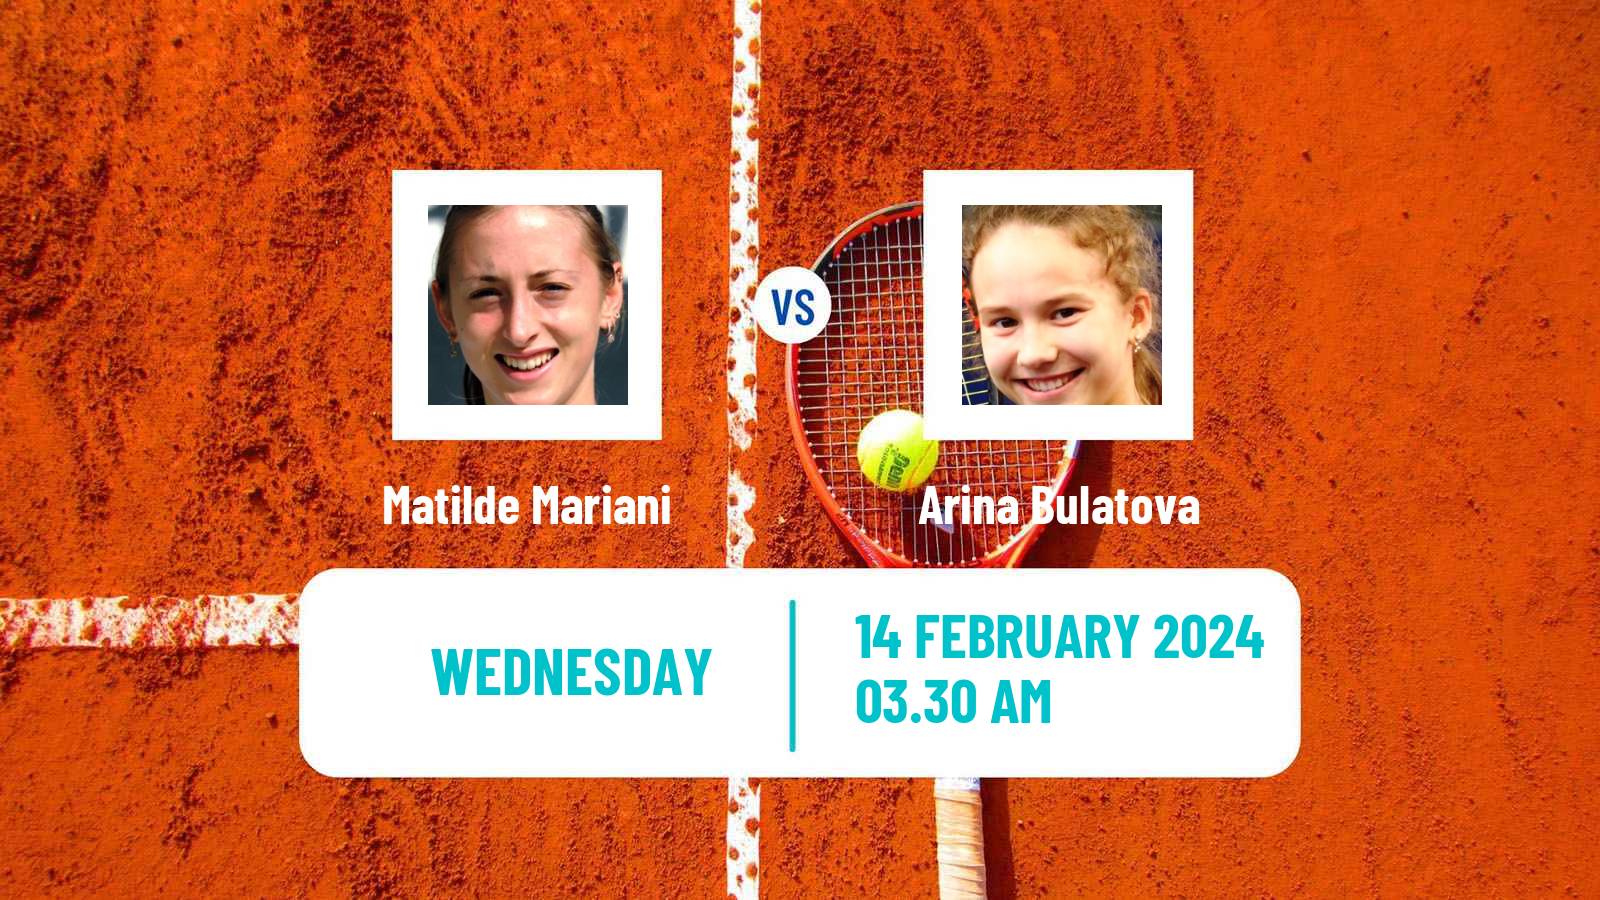 Tennis ITF W15 Monastir 5 Women Matilde Mariani - Arina Bulatova